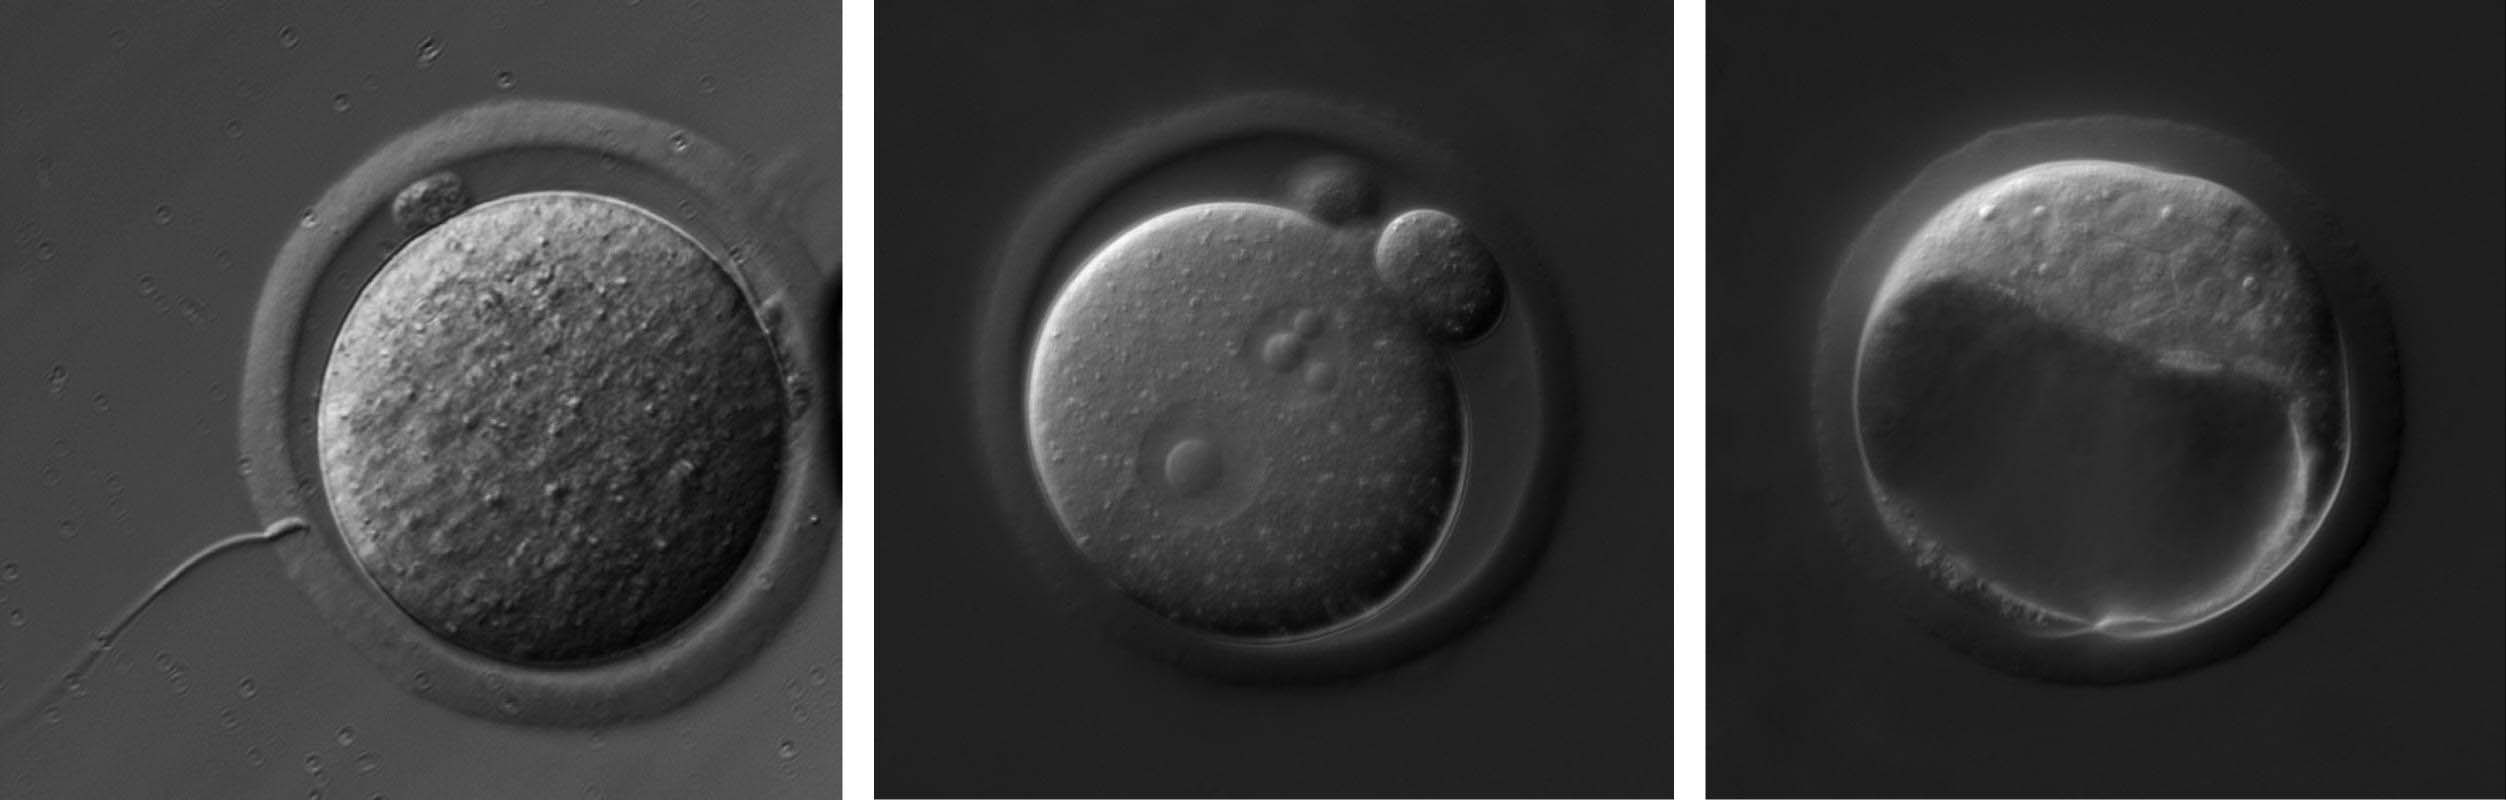 Keimzellen, Ursprung des Lebens